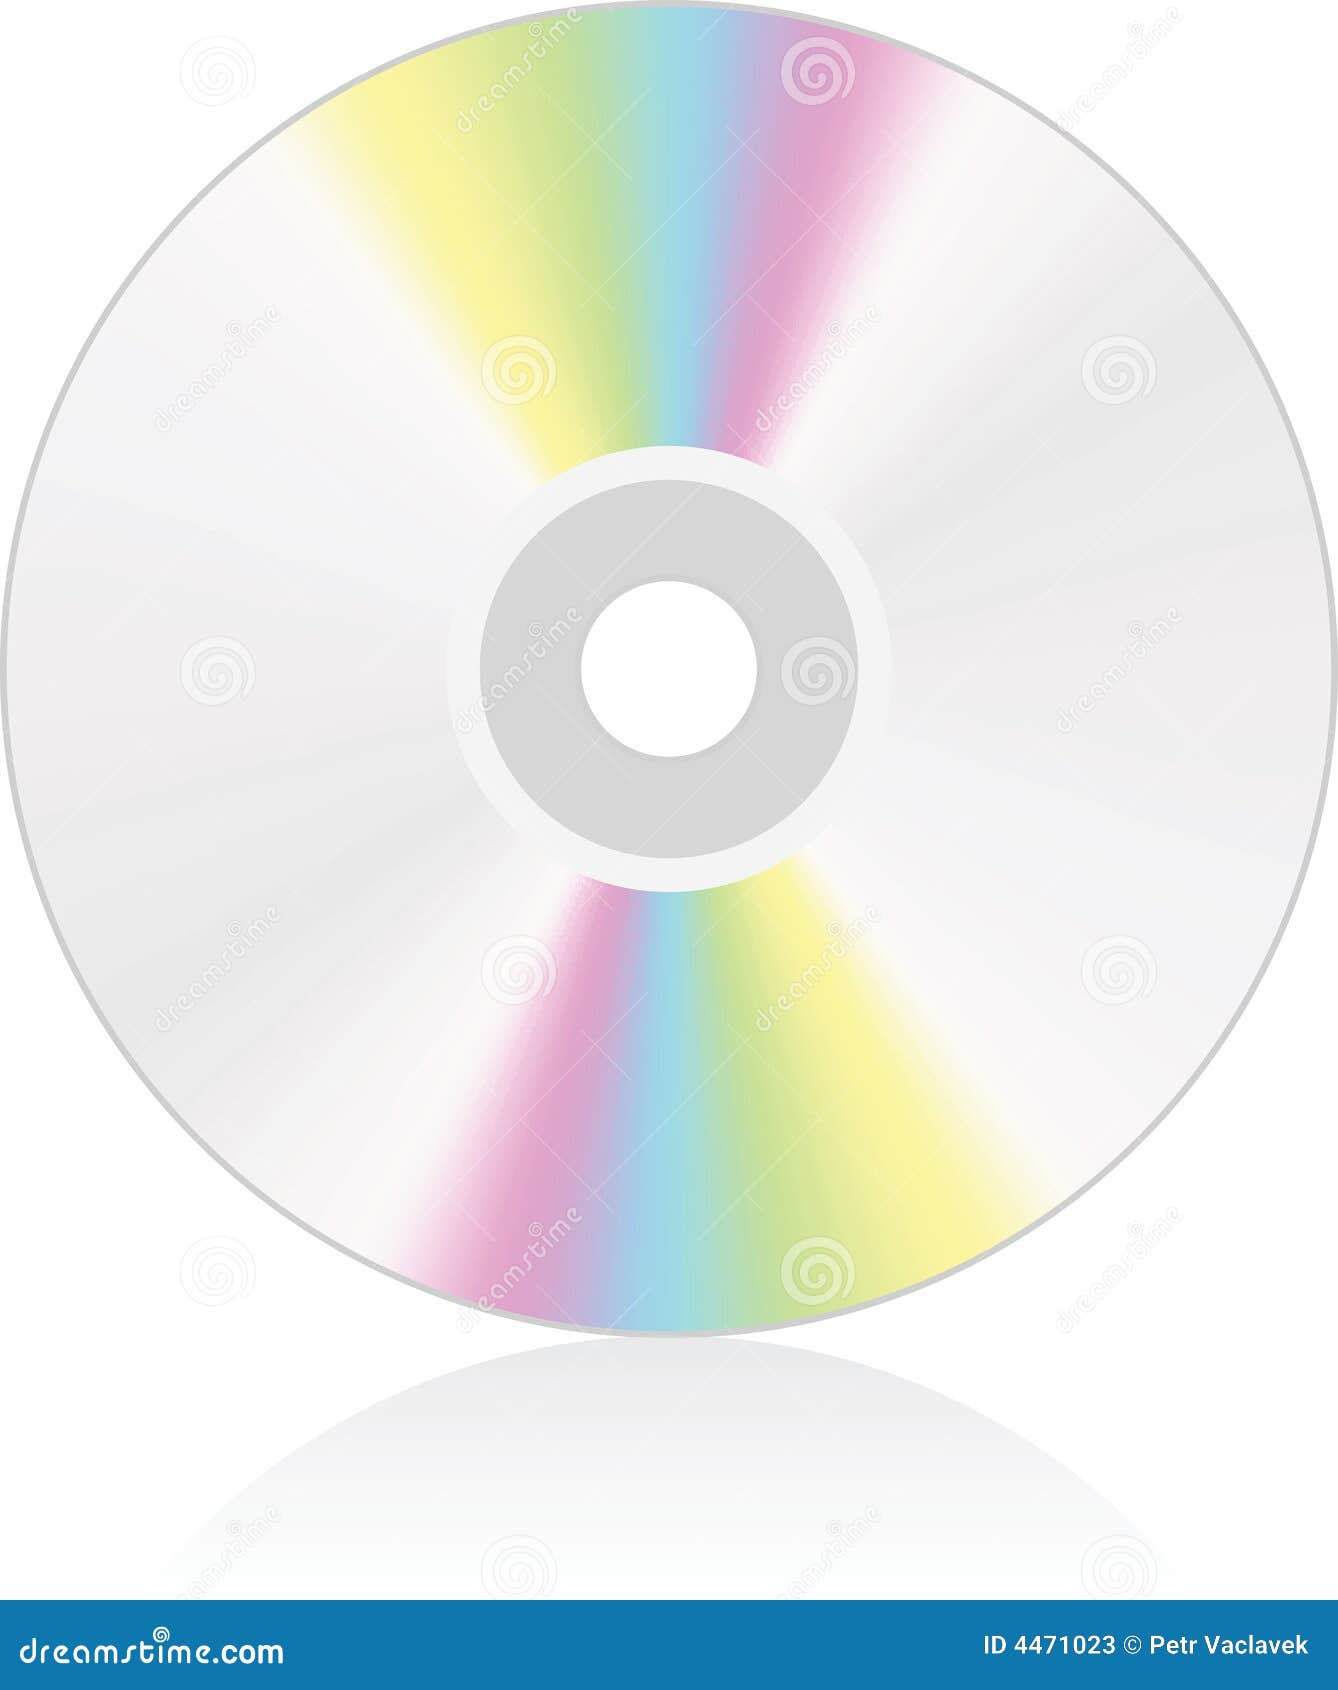 cd / dvd medium